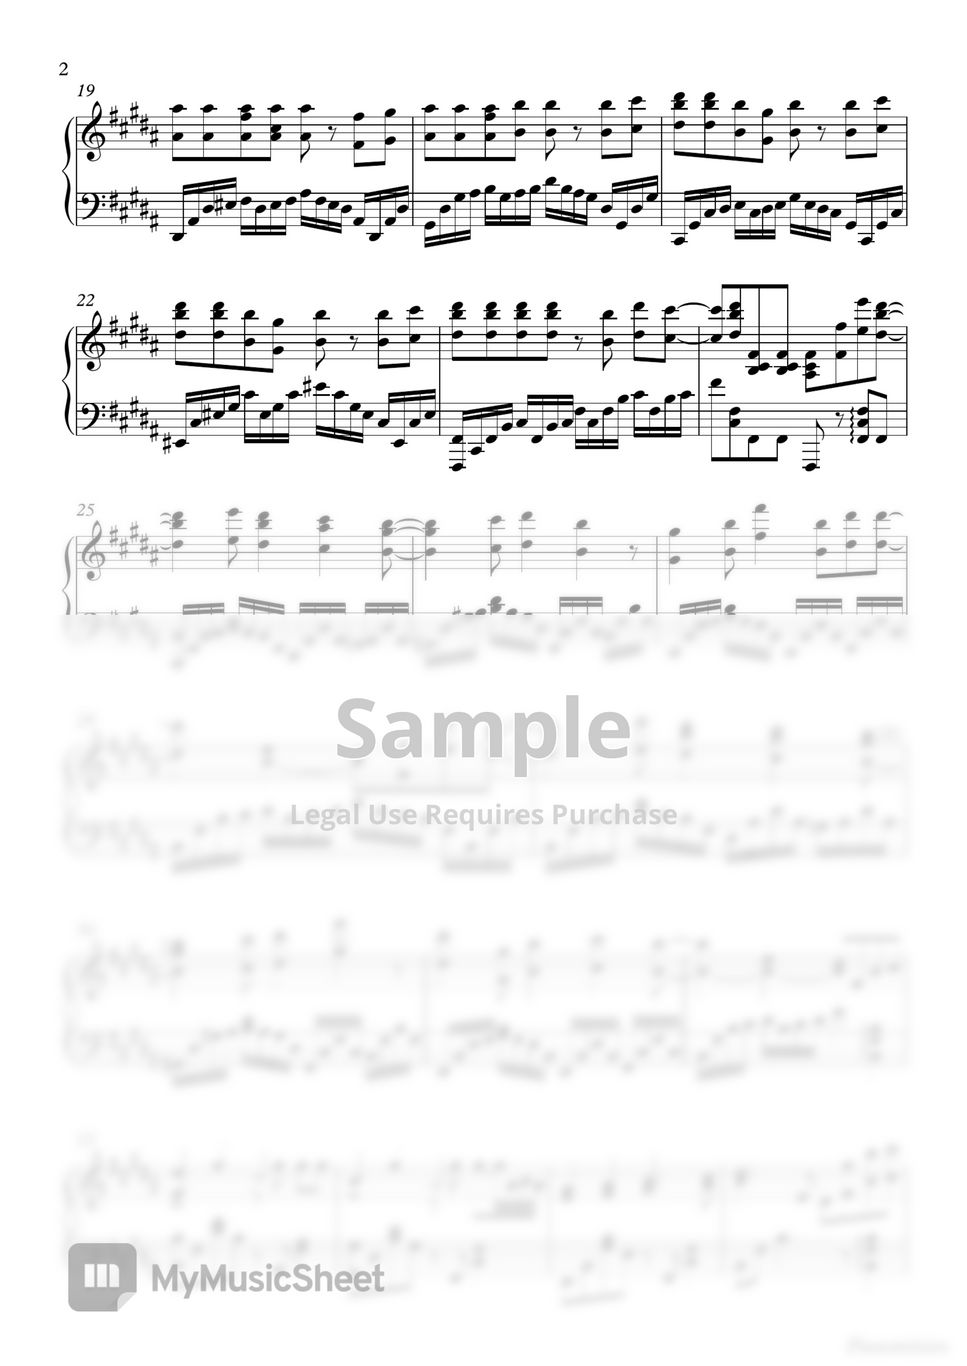 周杰伦 (Jay Chou) - 告白气球 (Love Confession) by Pianominion